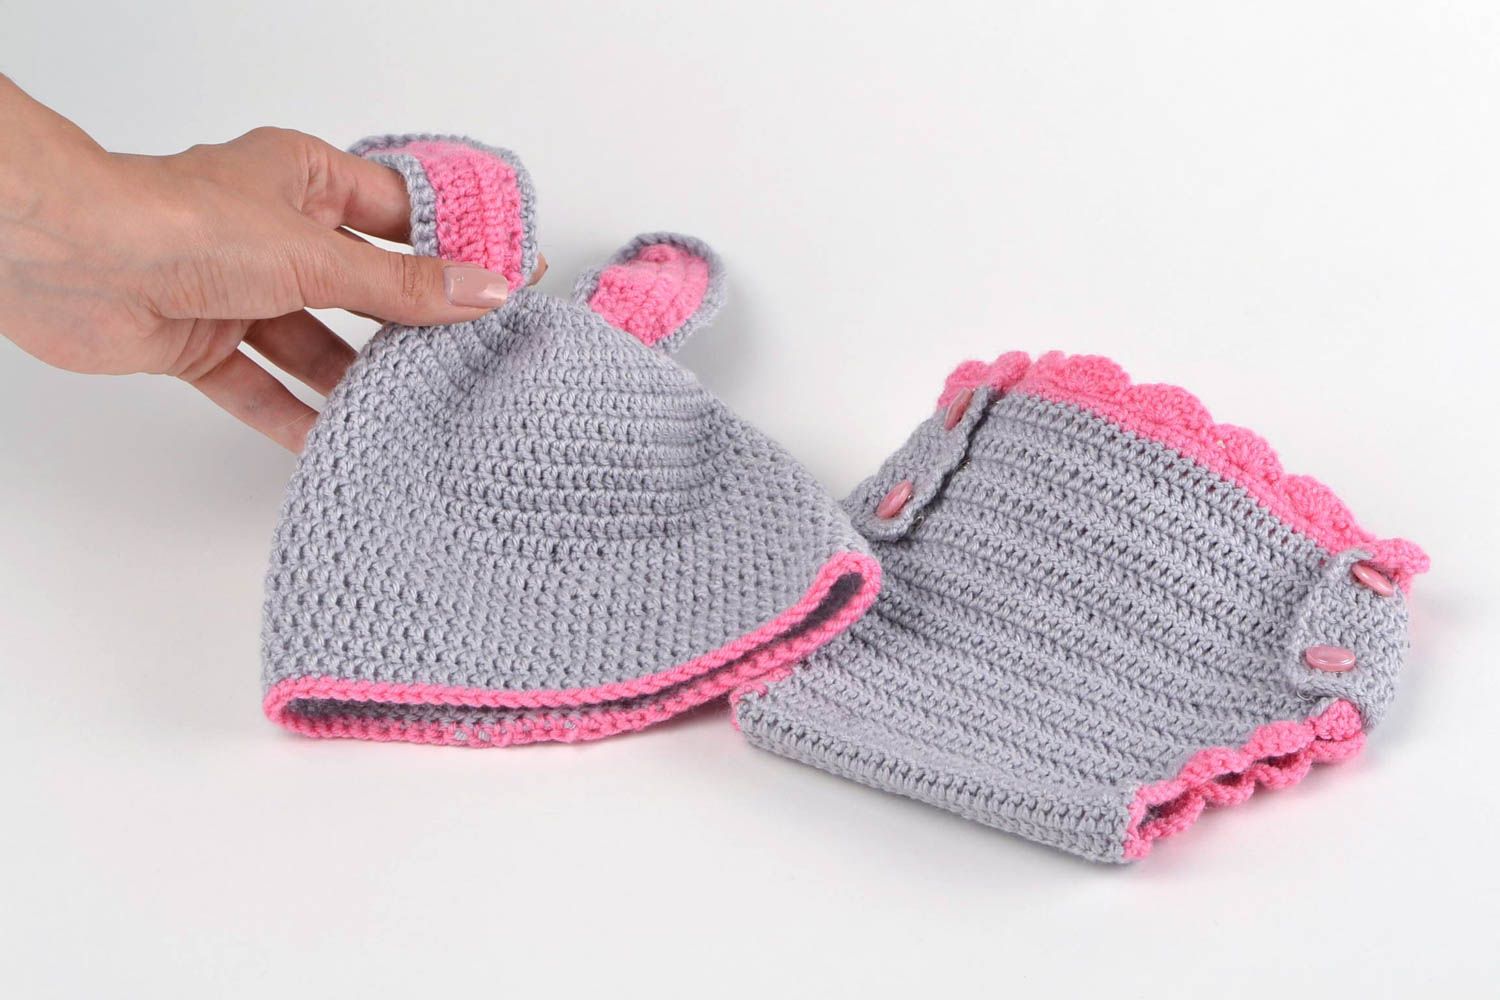 Culotte bébé fait main Bonnet bébé Vêtement enfant tricotés au crochet photo 2